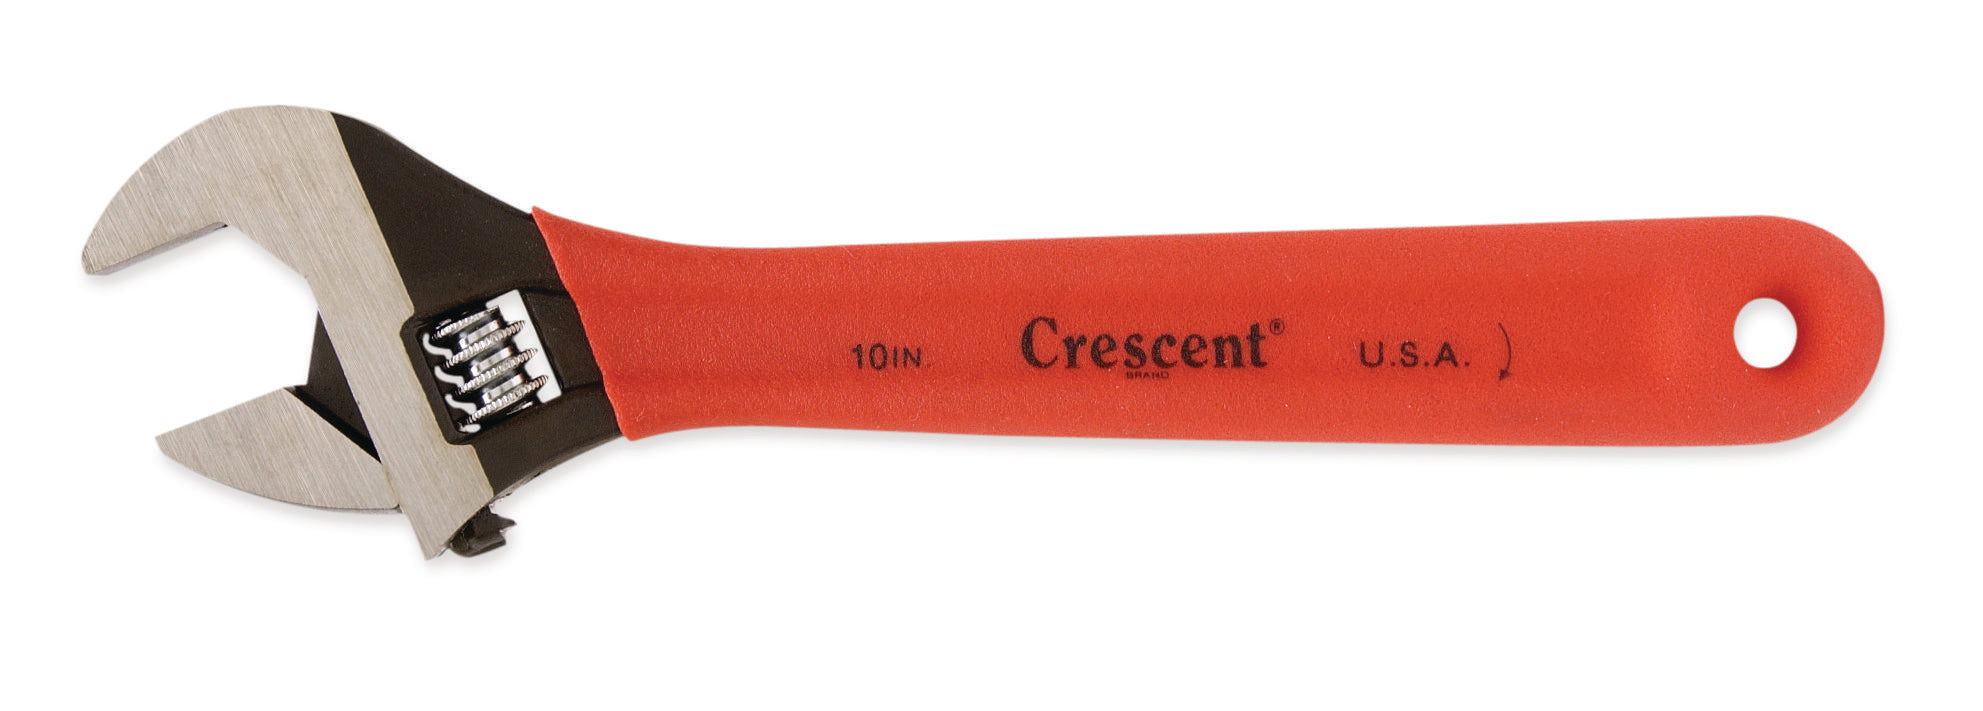 Crescent 10